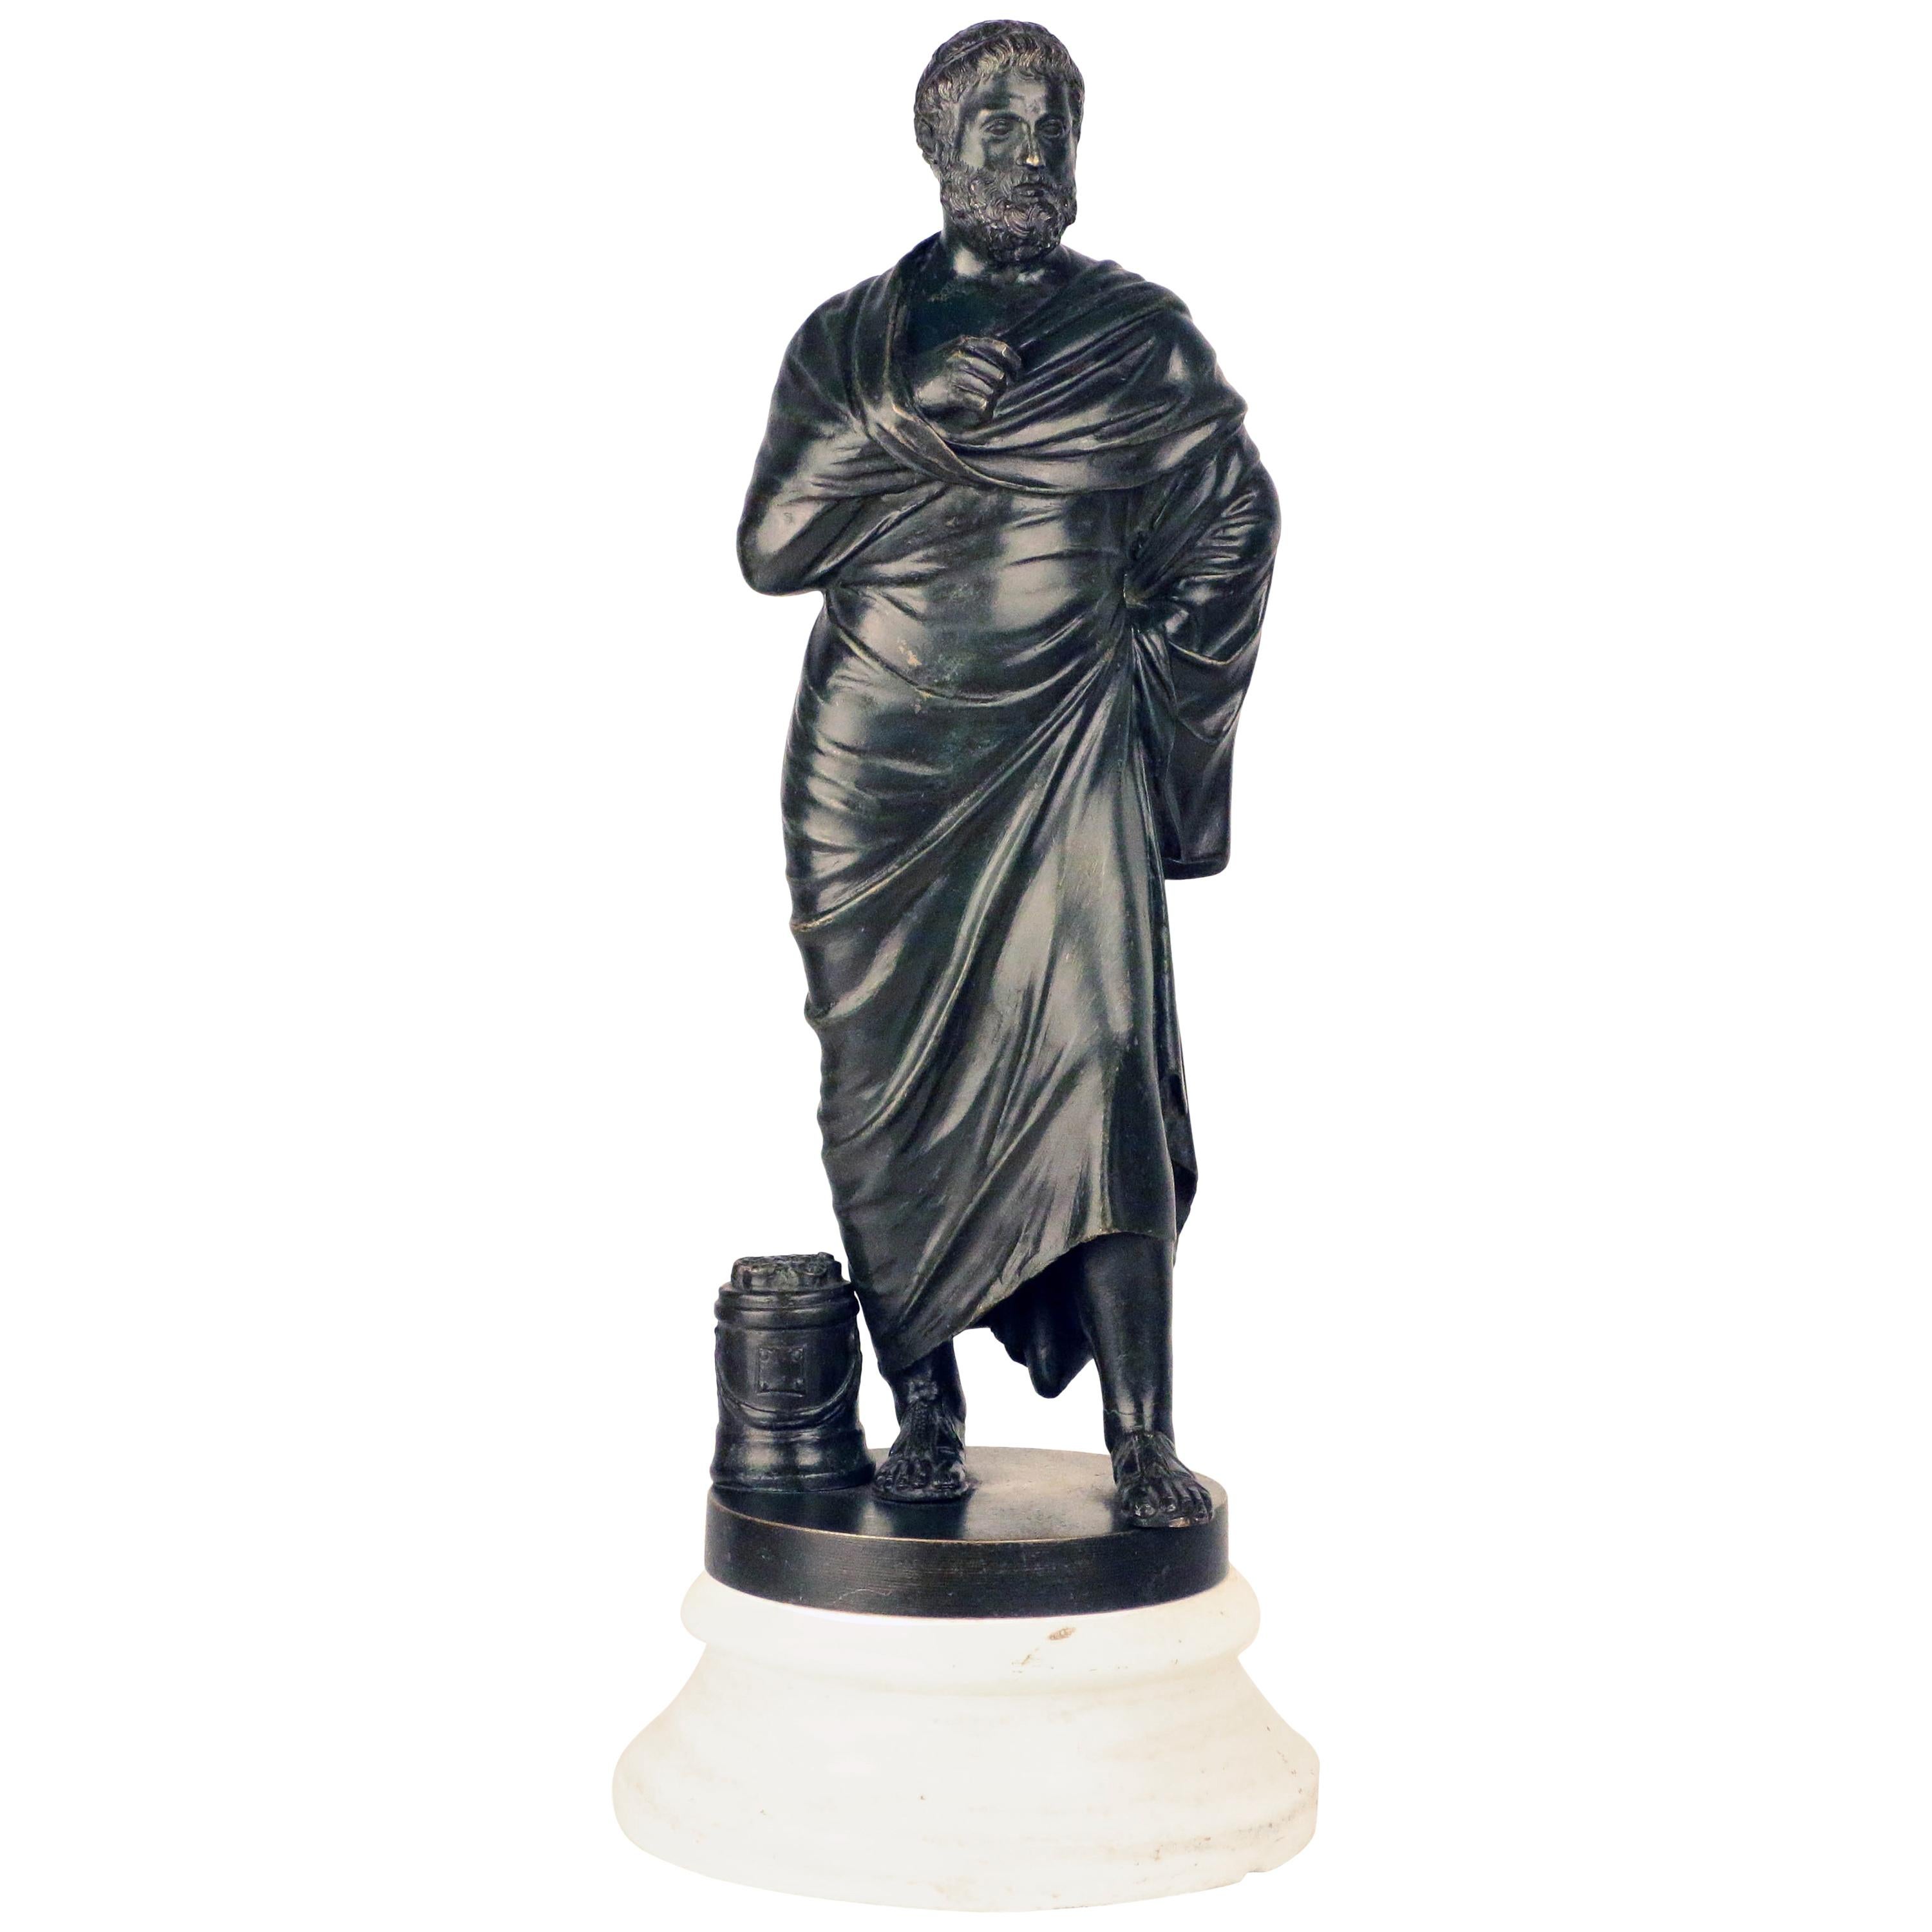 D'après l'antiquité, le bronze Grand Tour d'Aristote